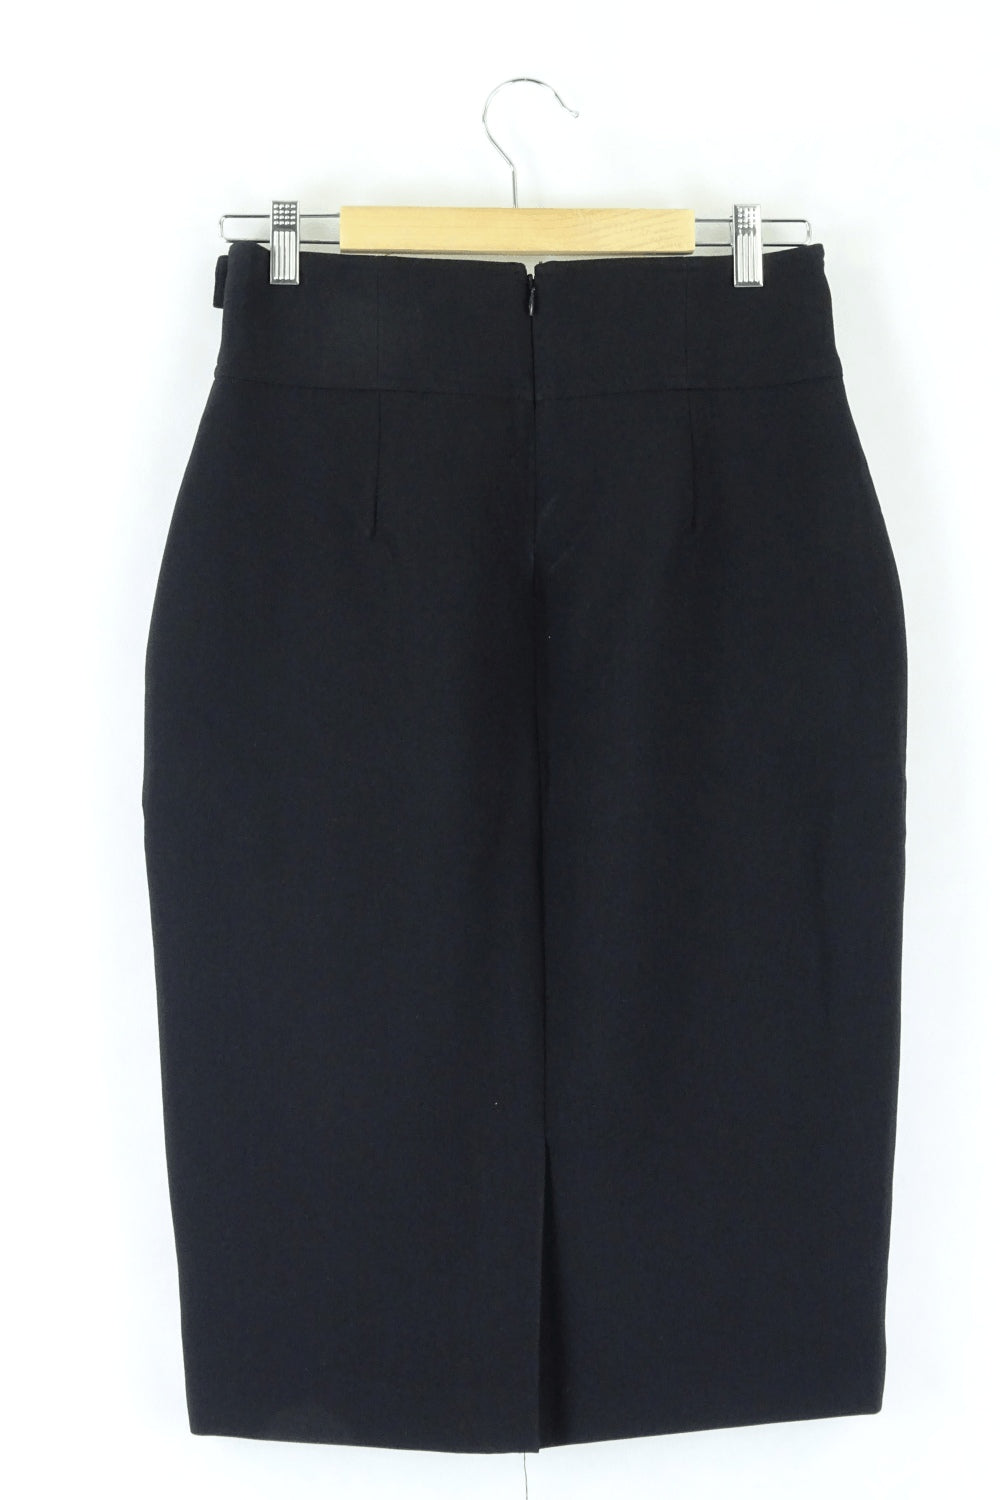 Portmans Black Business Skirt 10